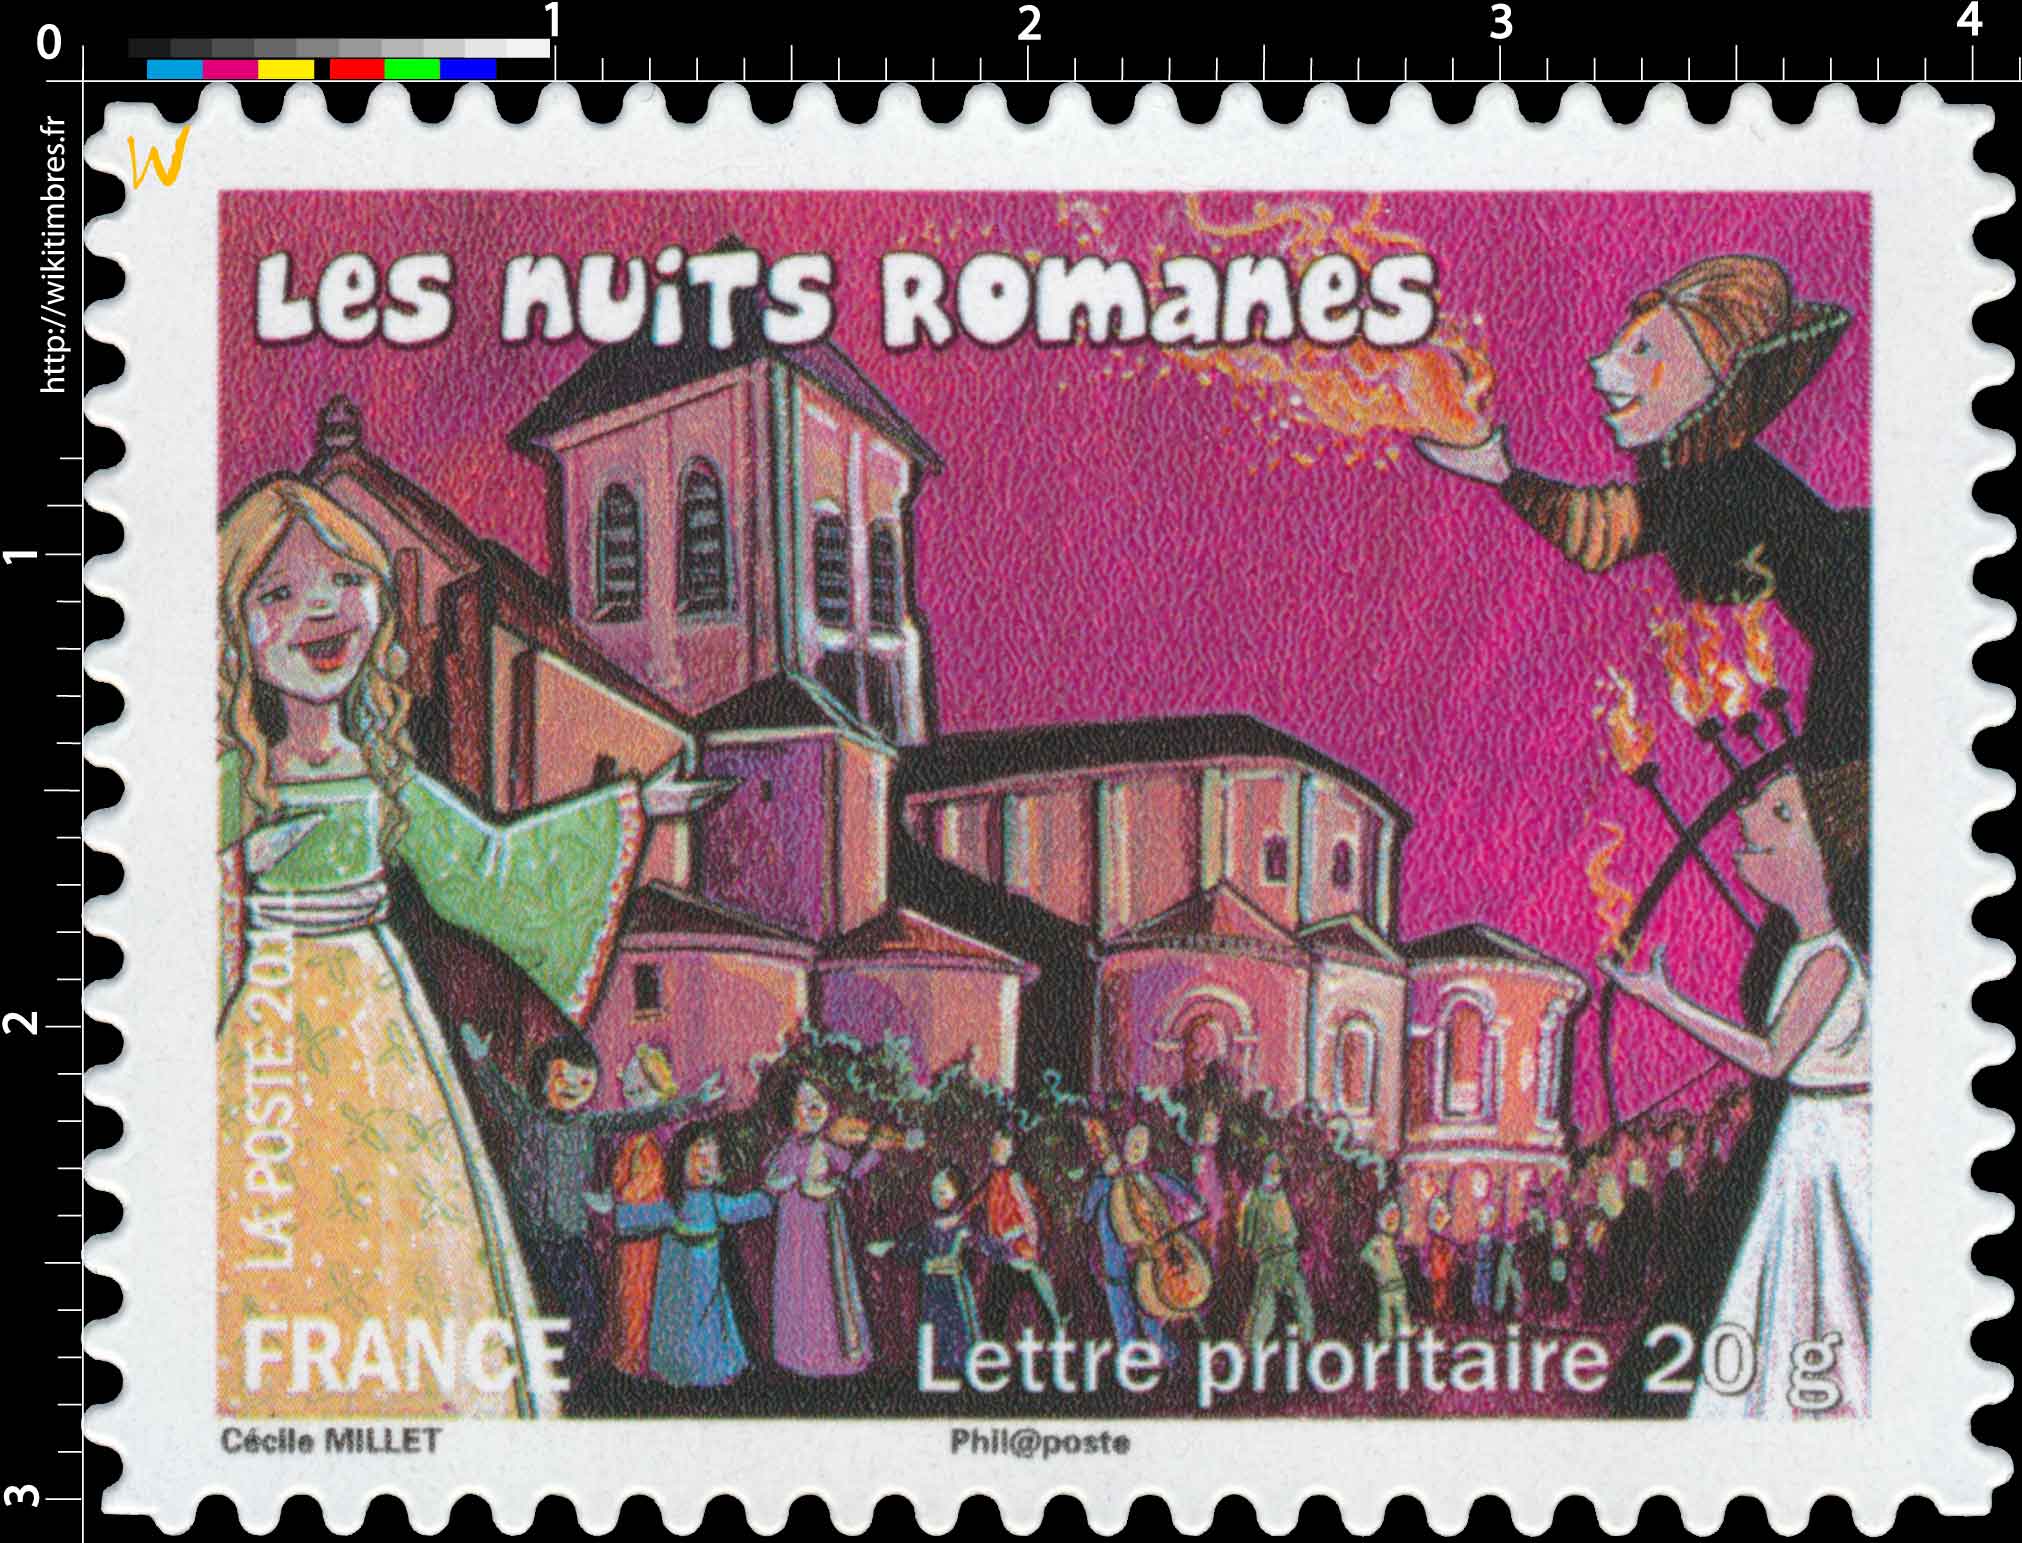 2011 Les nuits romanes